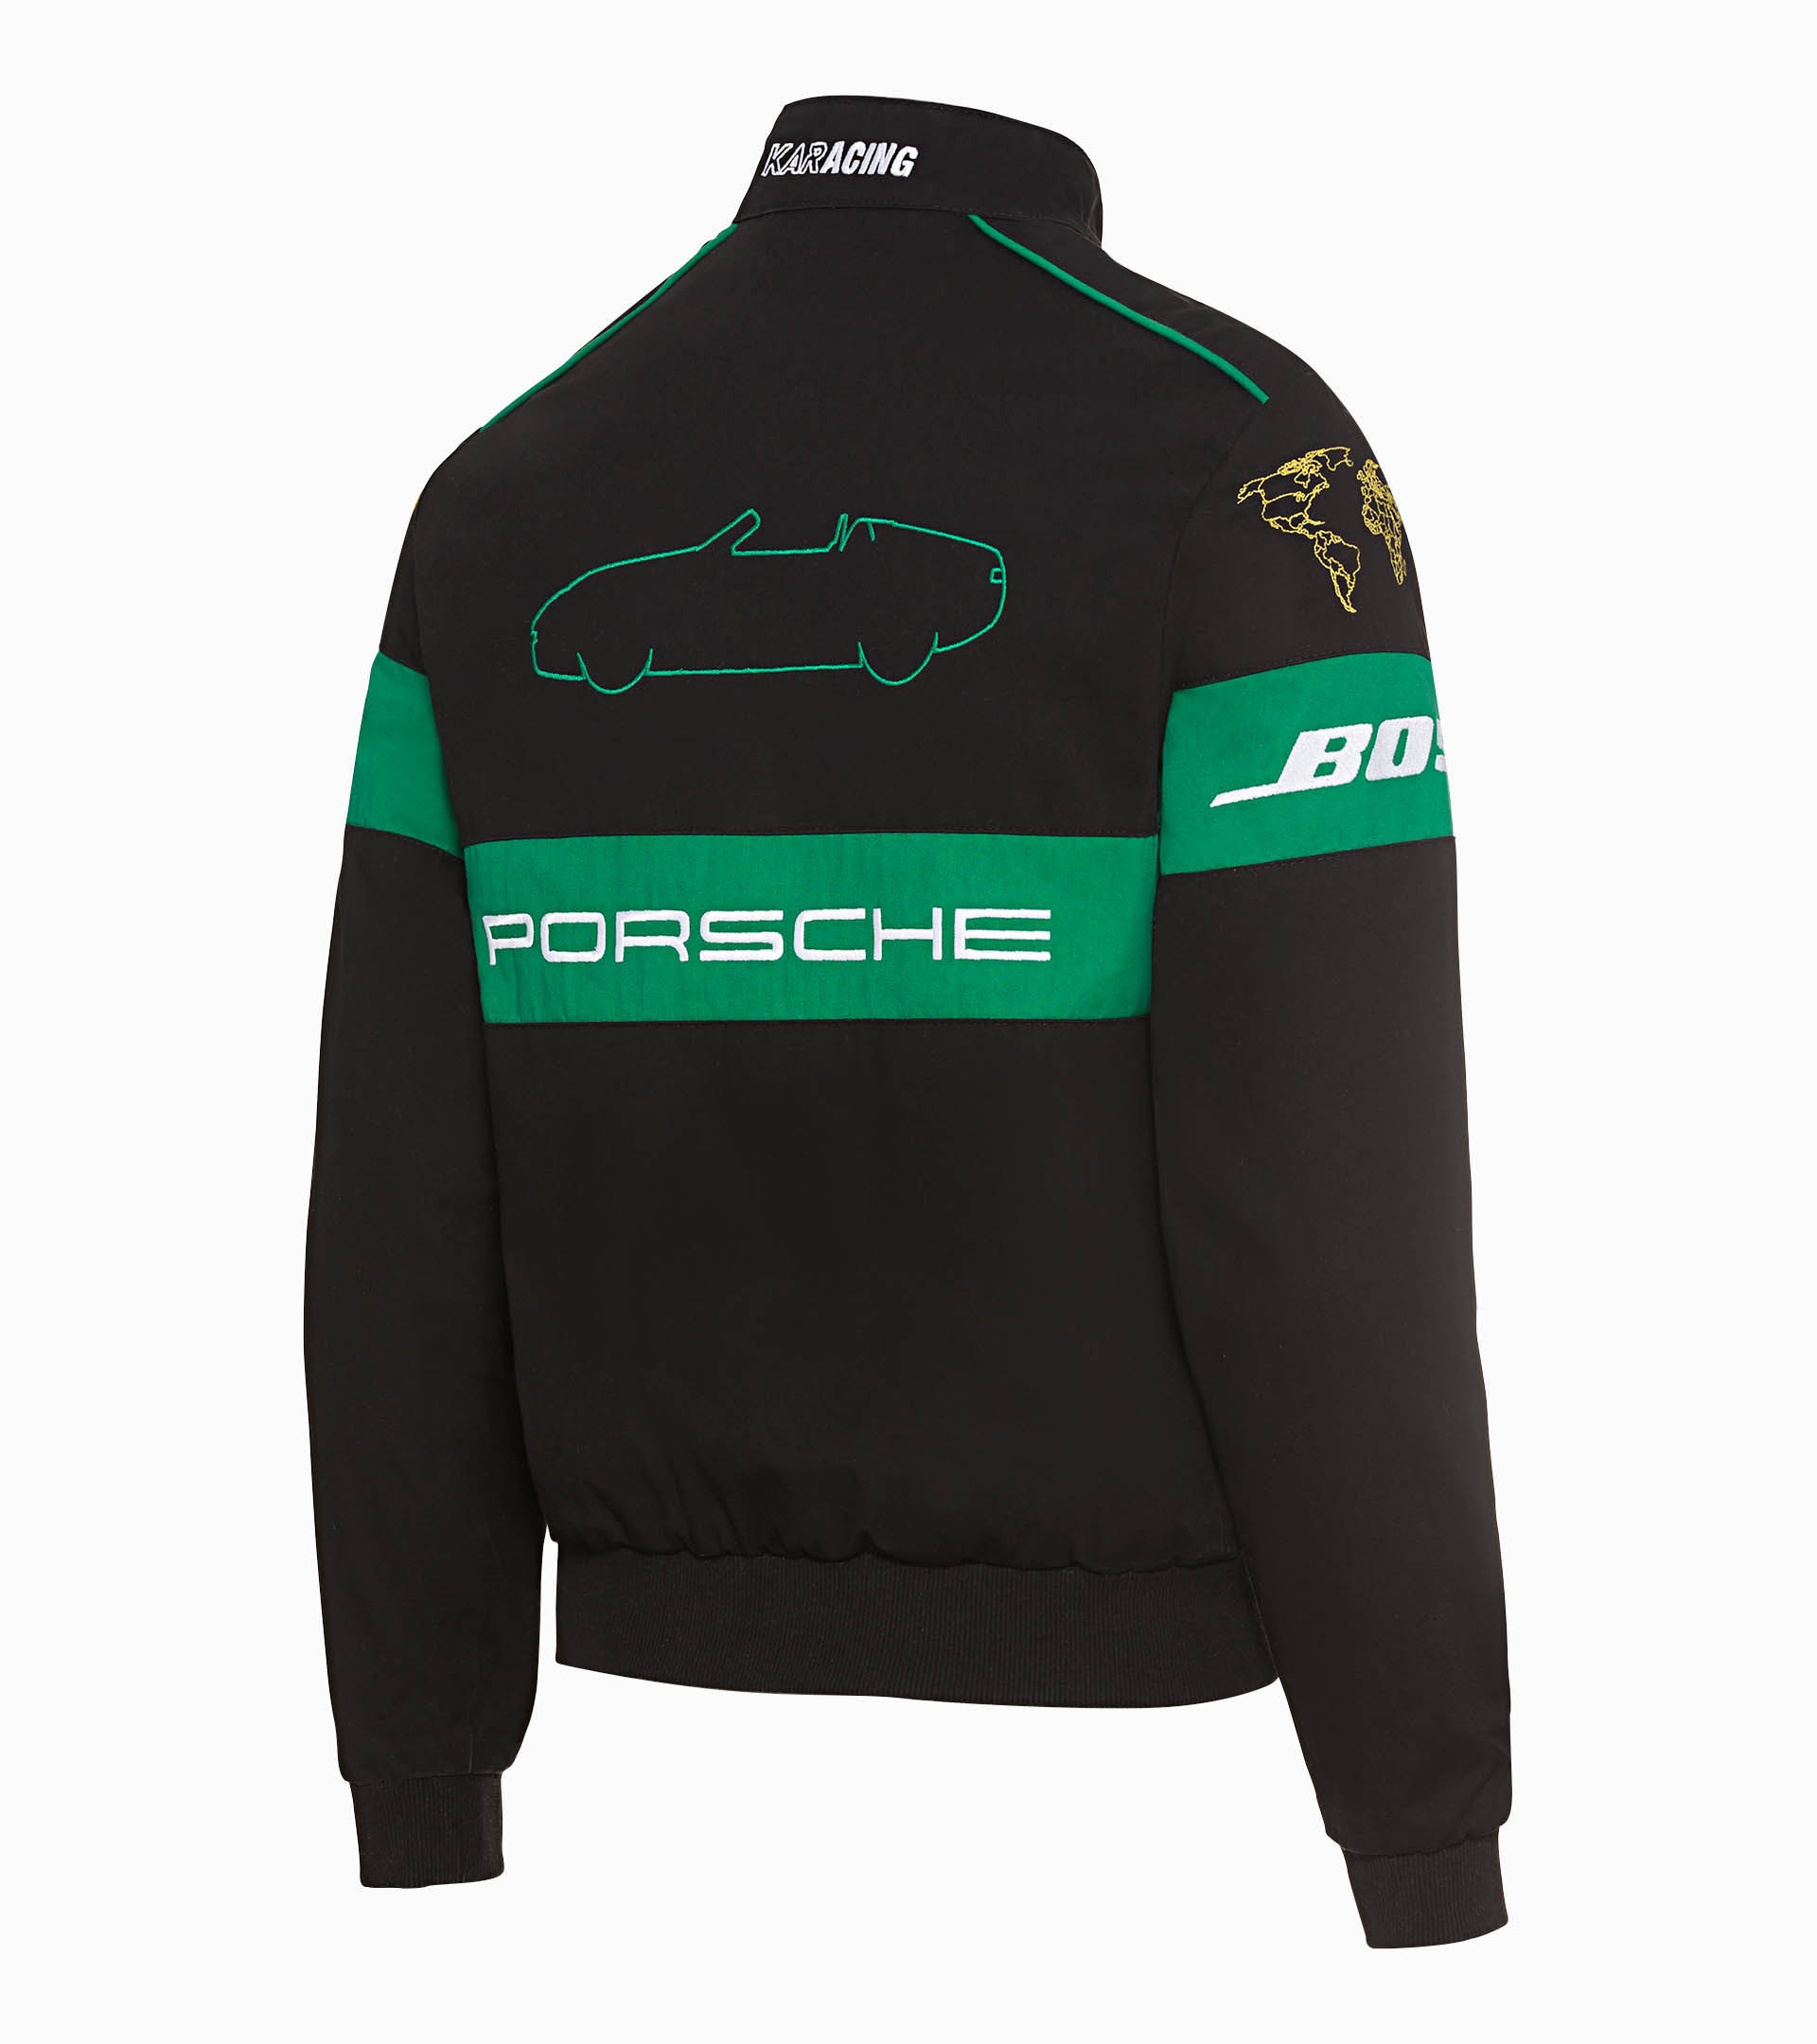 Acheter en ligne des vêtements Porsche